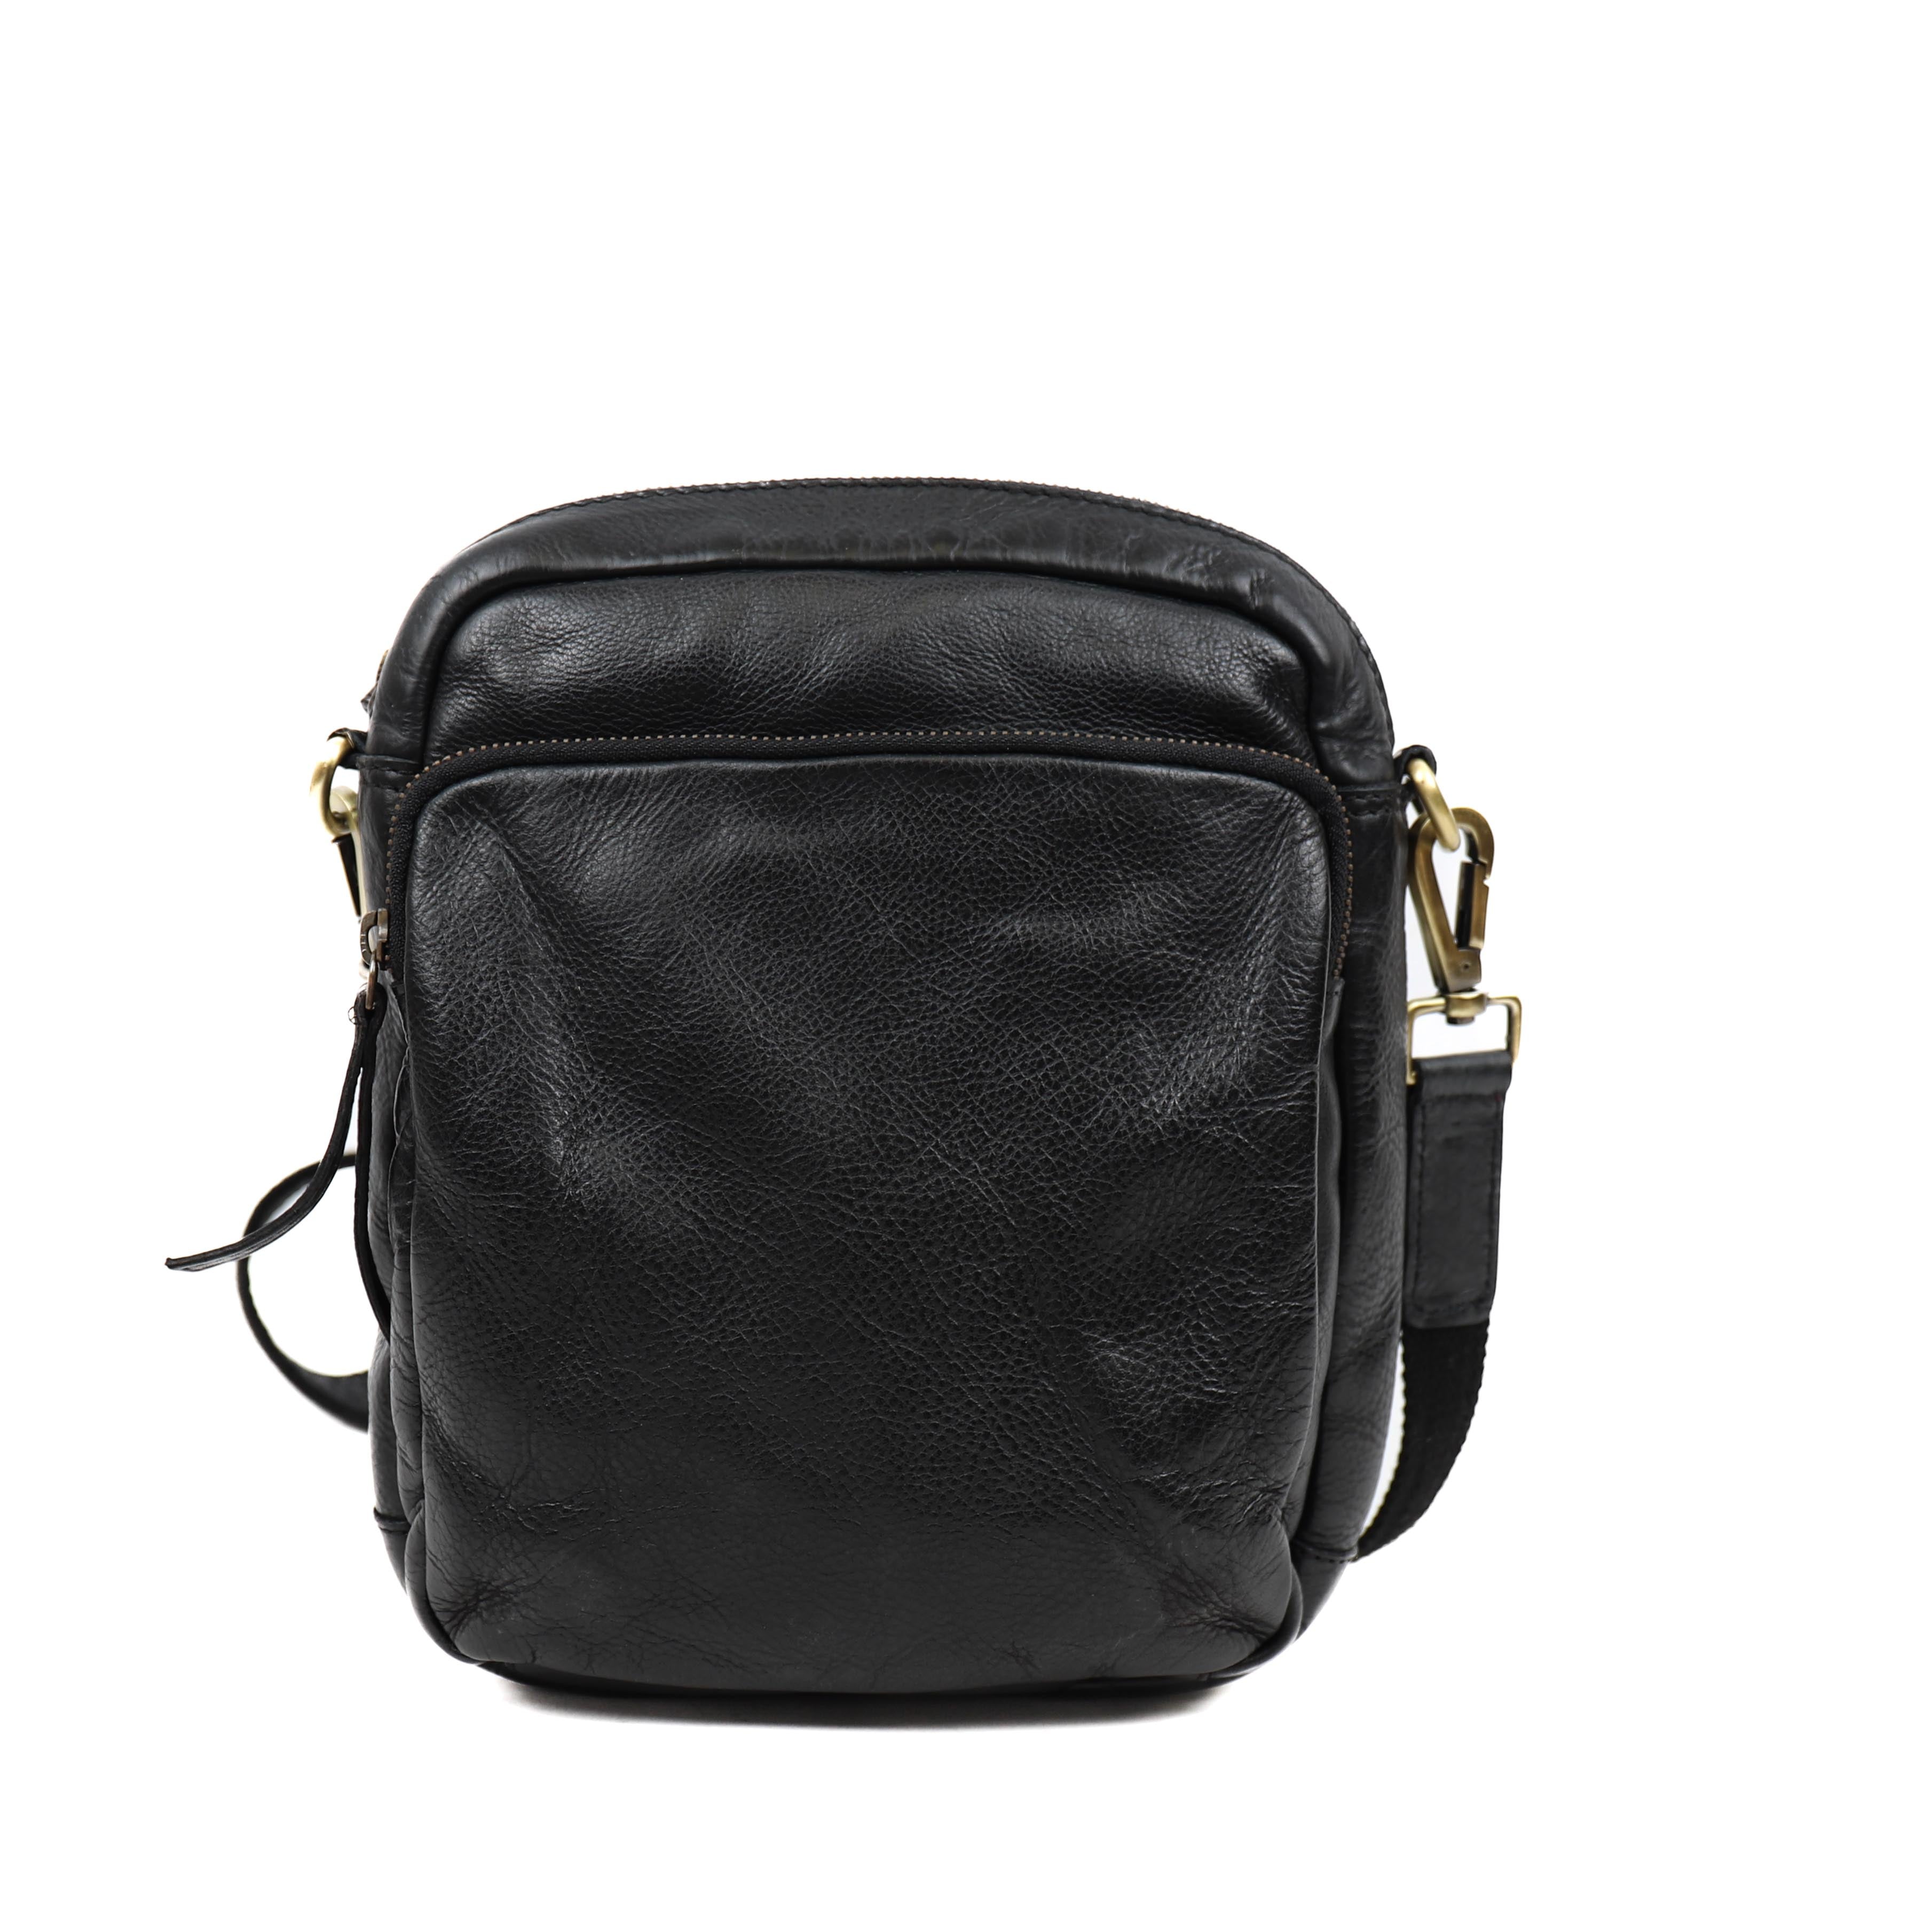 Shoulder bag 'Ringo' black